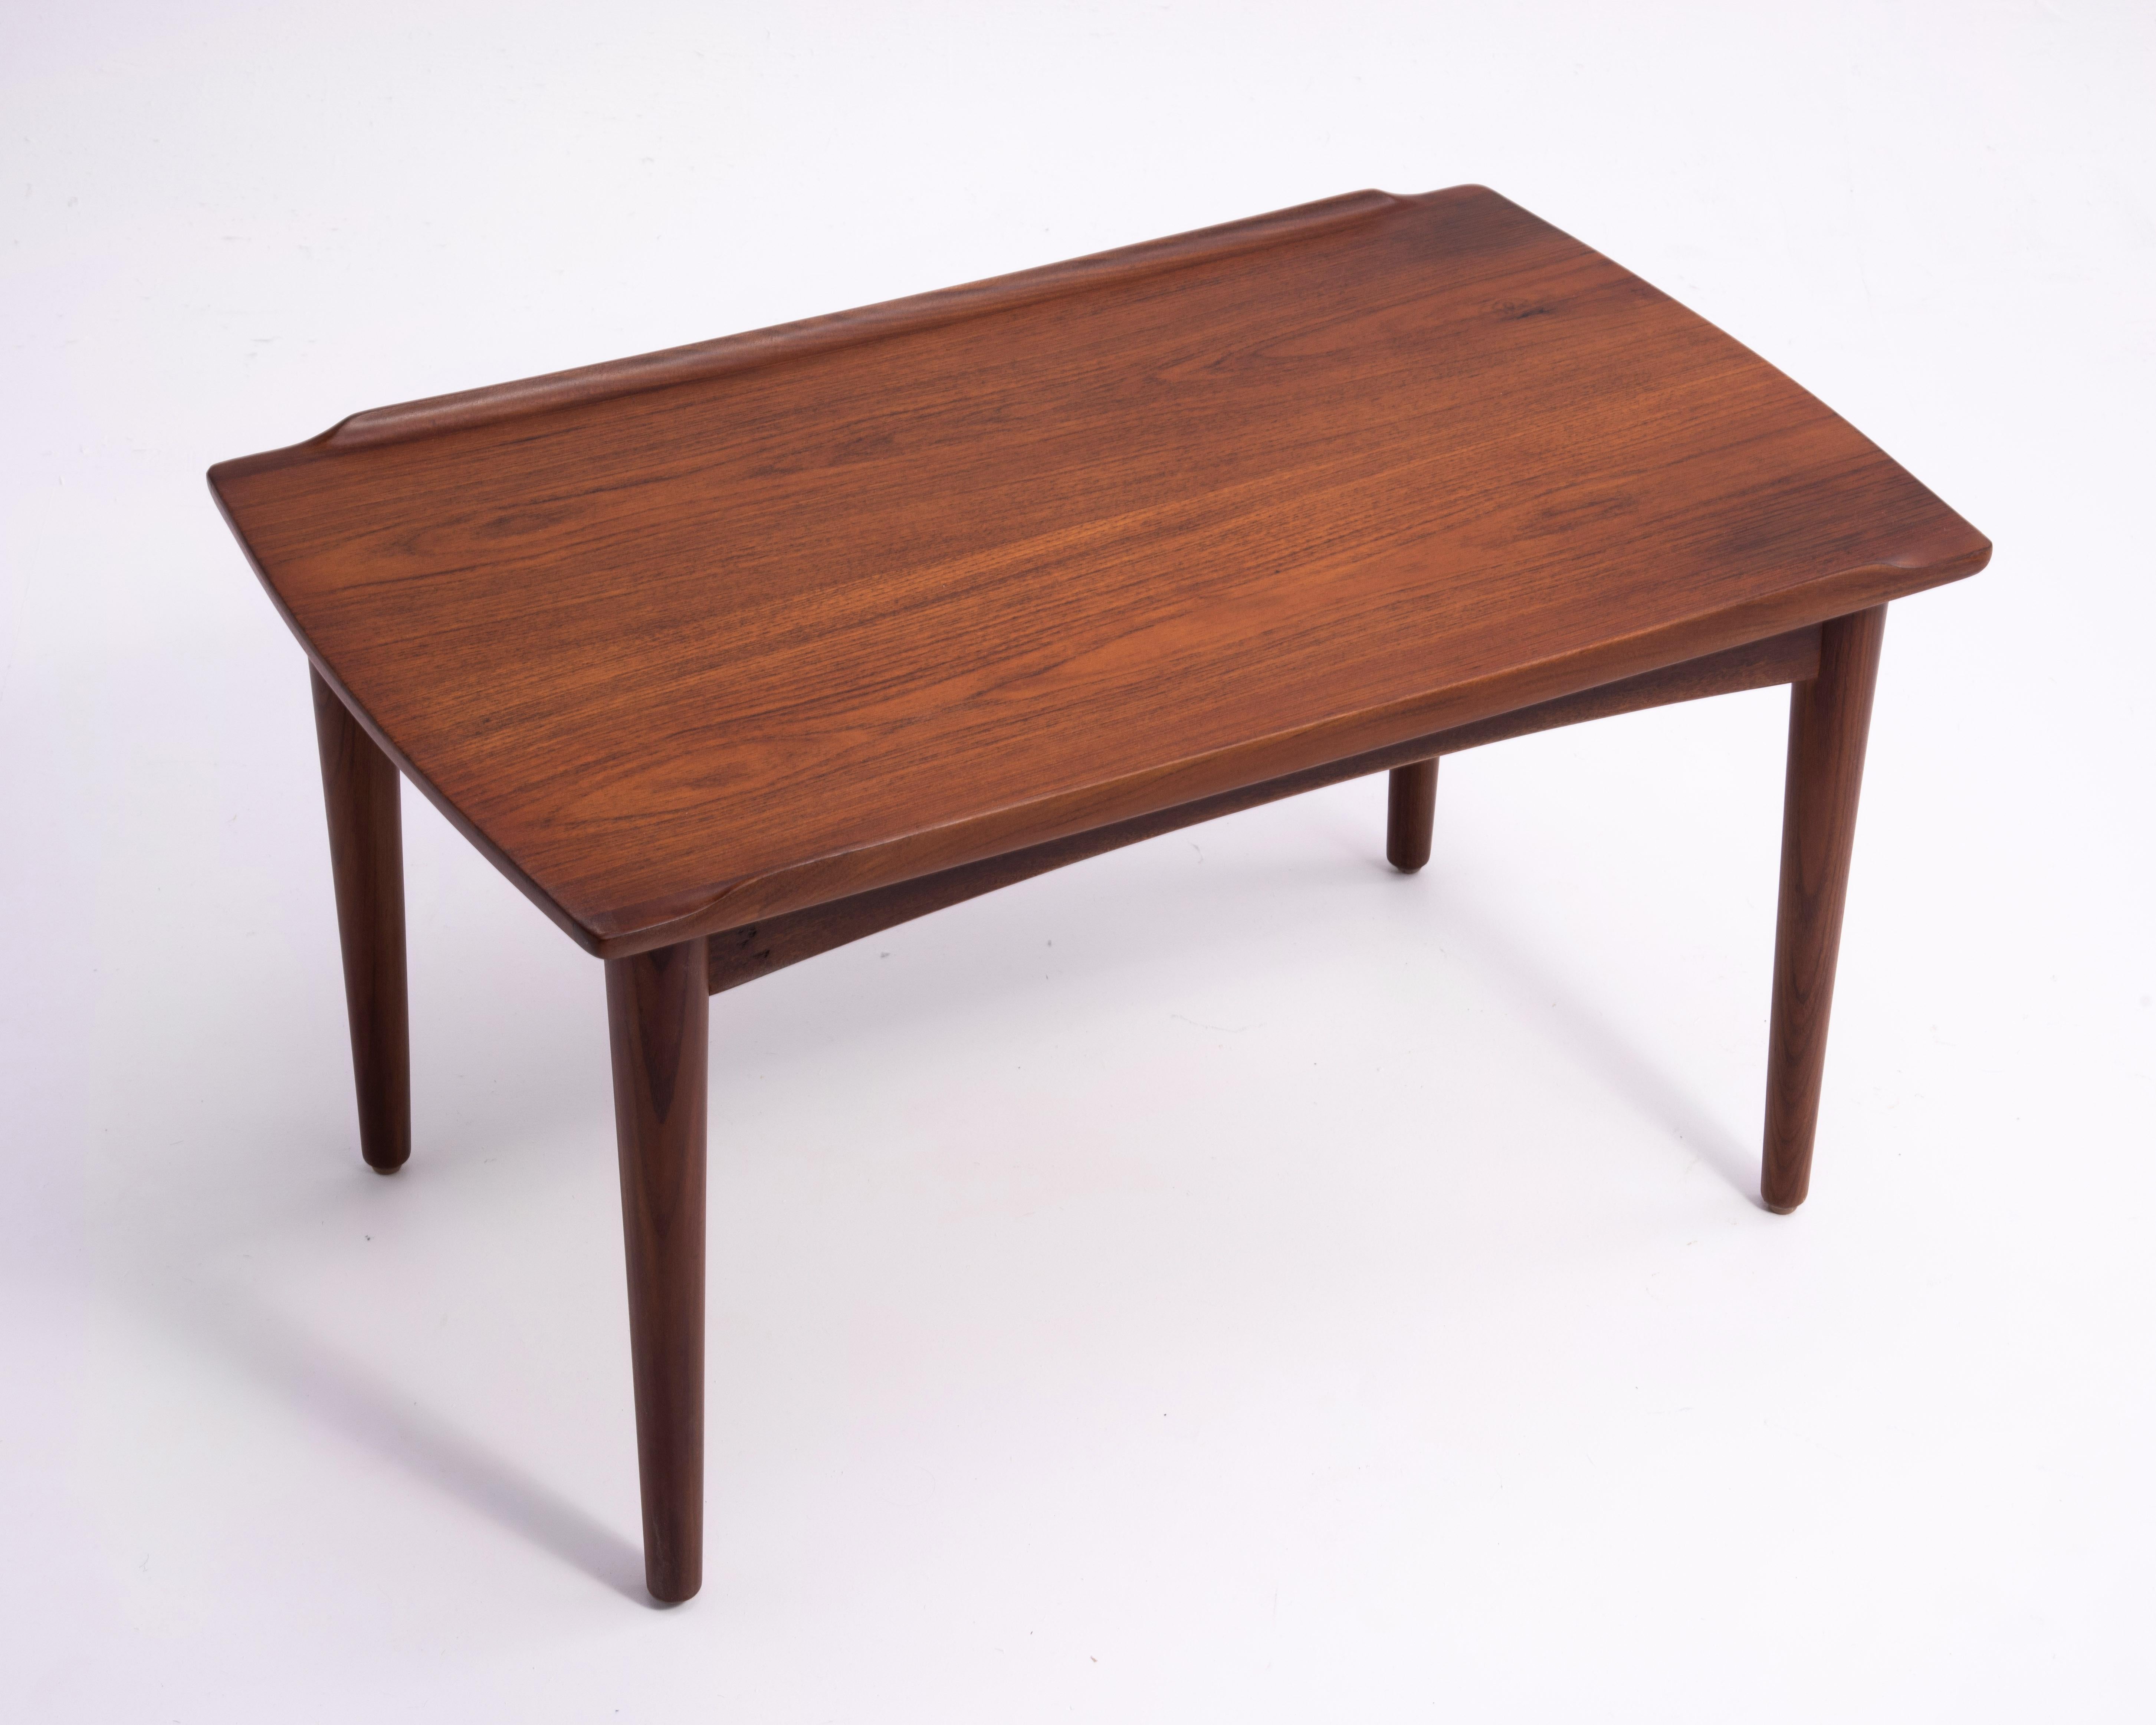 Danish Modern Teak Dowel Leg Side Table After Grete Jalk Marked B. J. 1970s For Sale 6